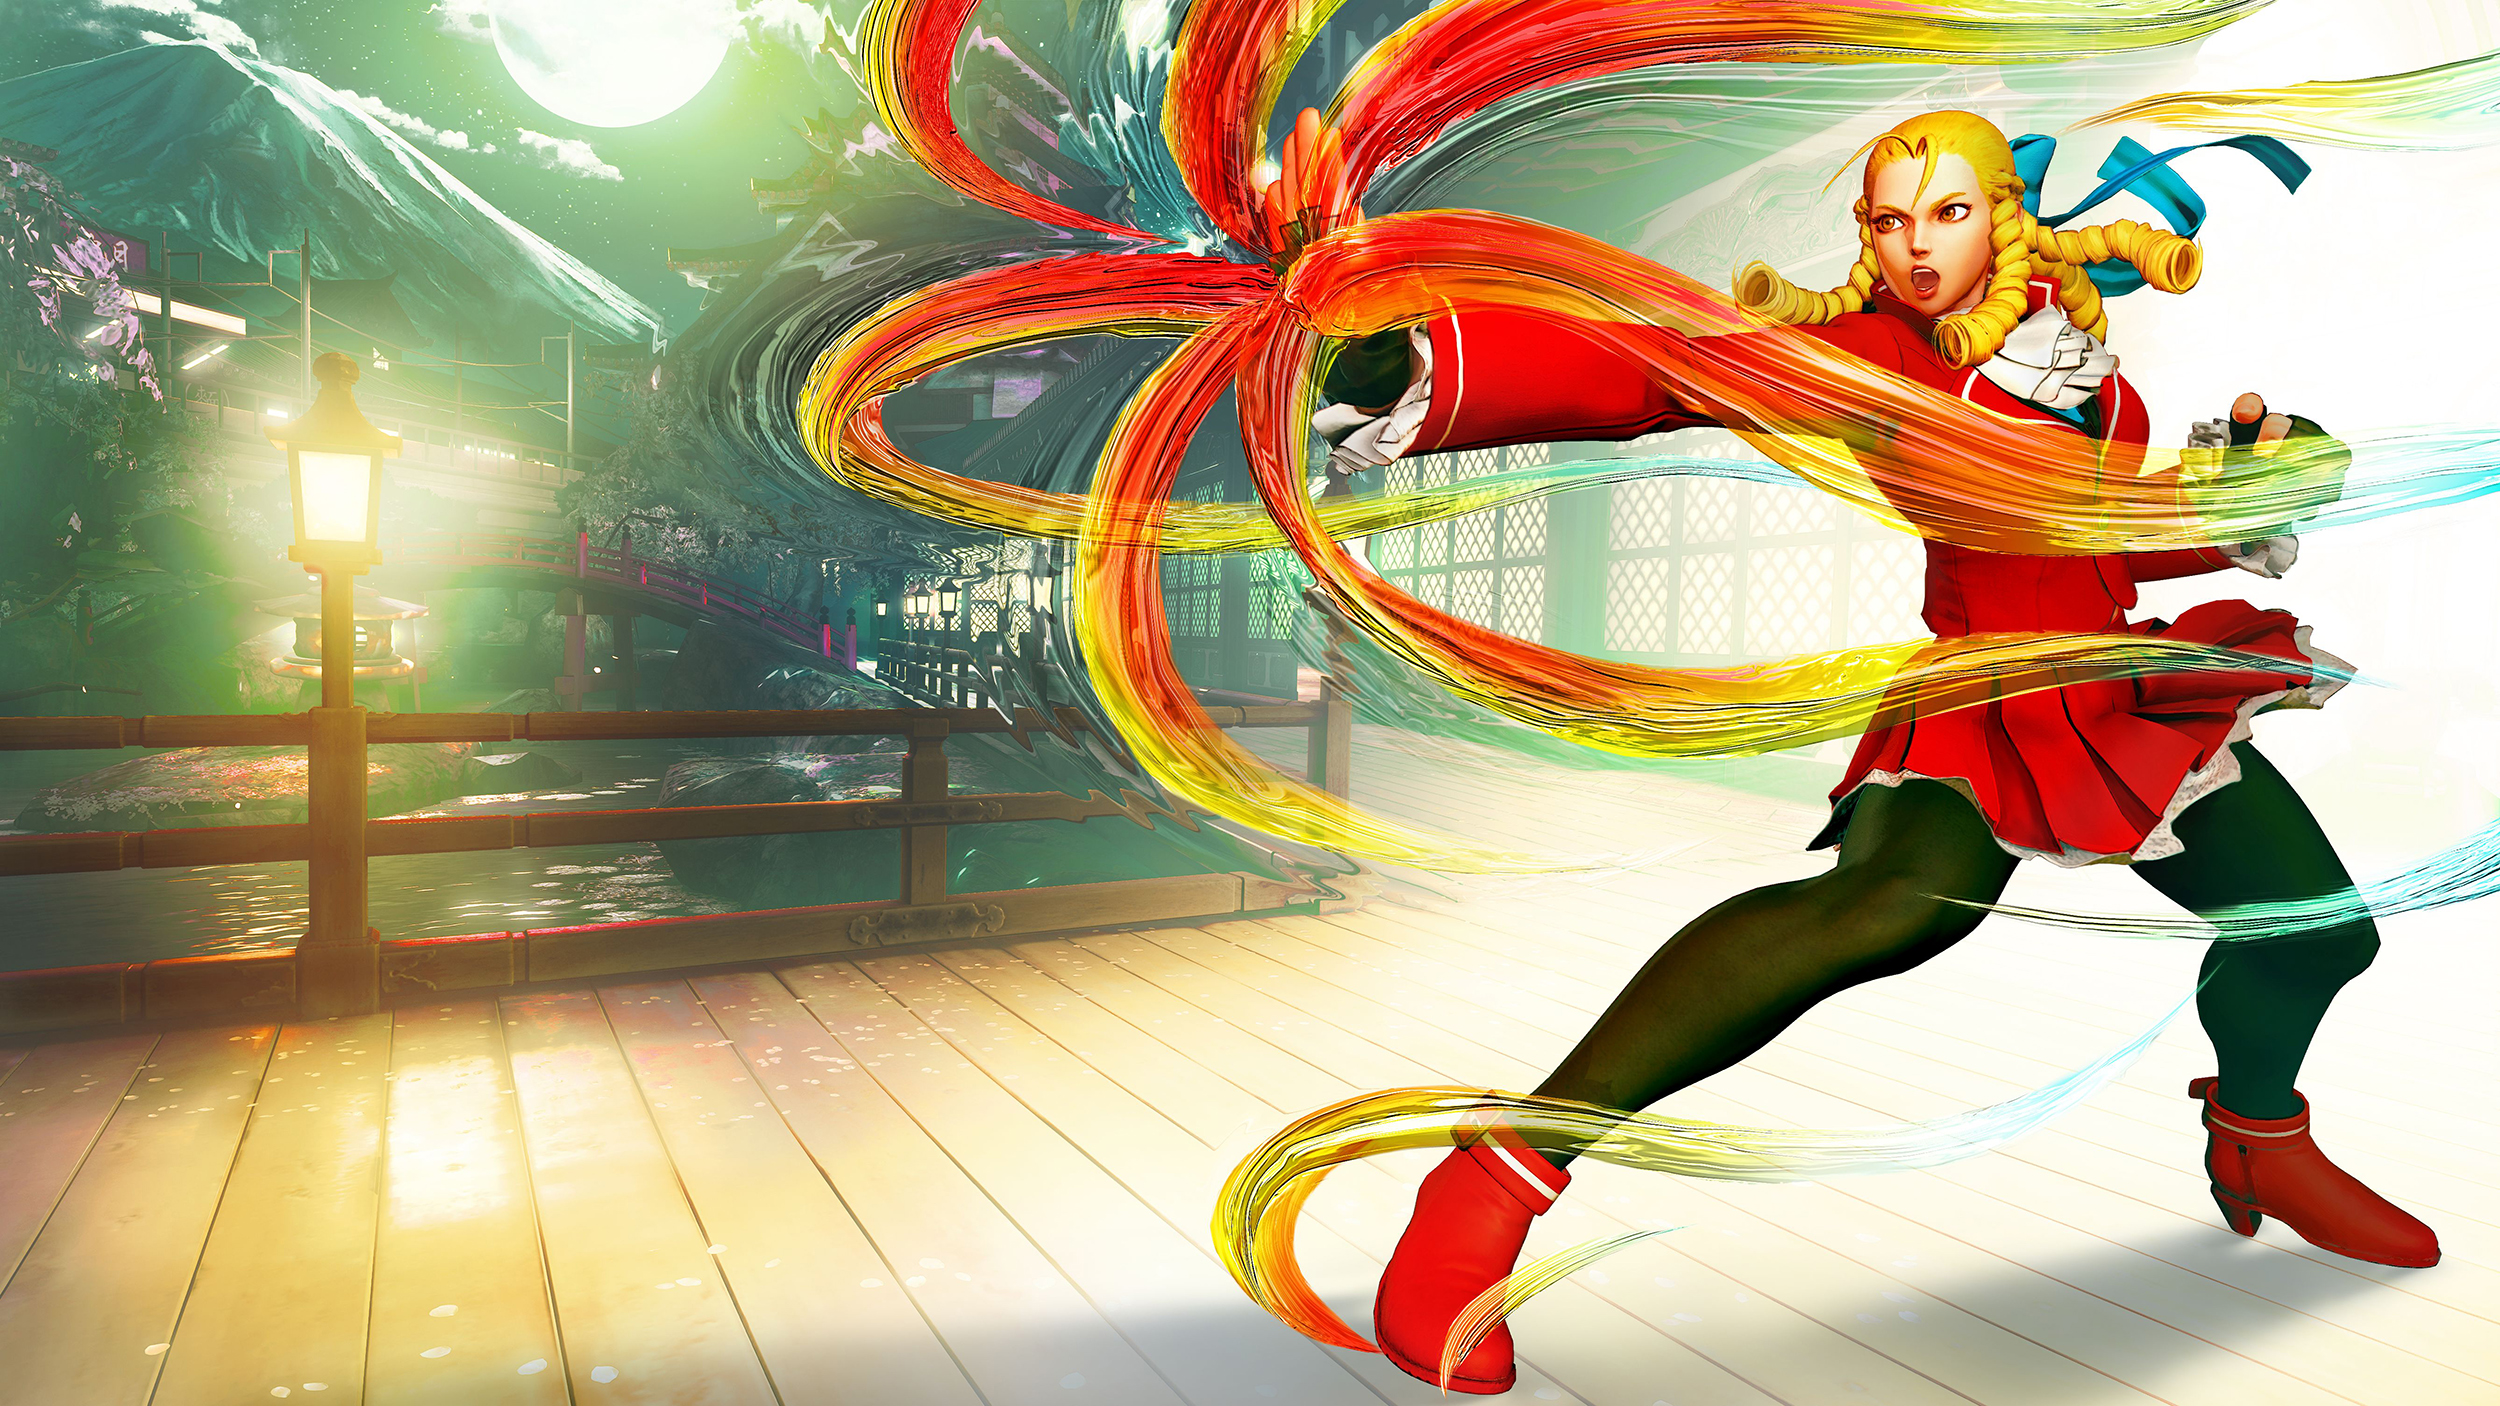 Street Fighter V giới thiệu bộ đôi đấu sĩ: Rashid và Karin